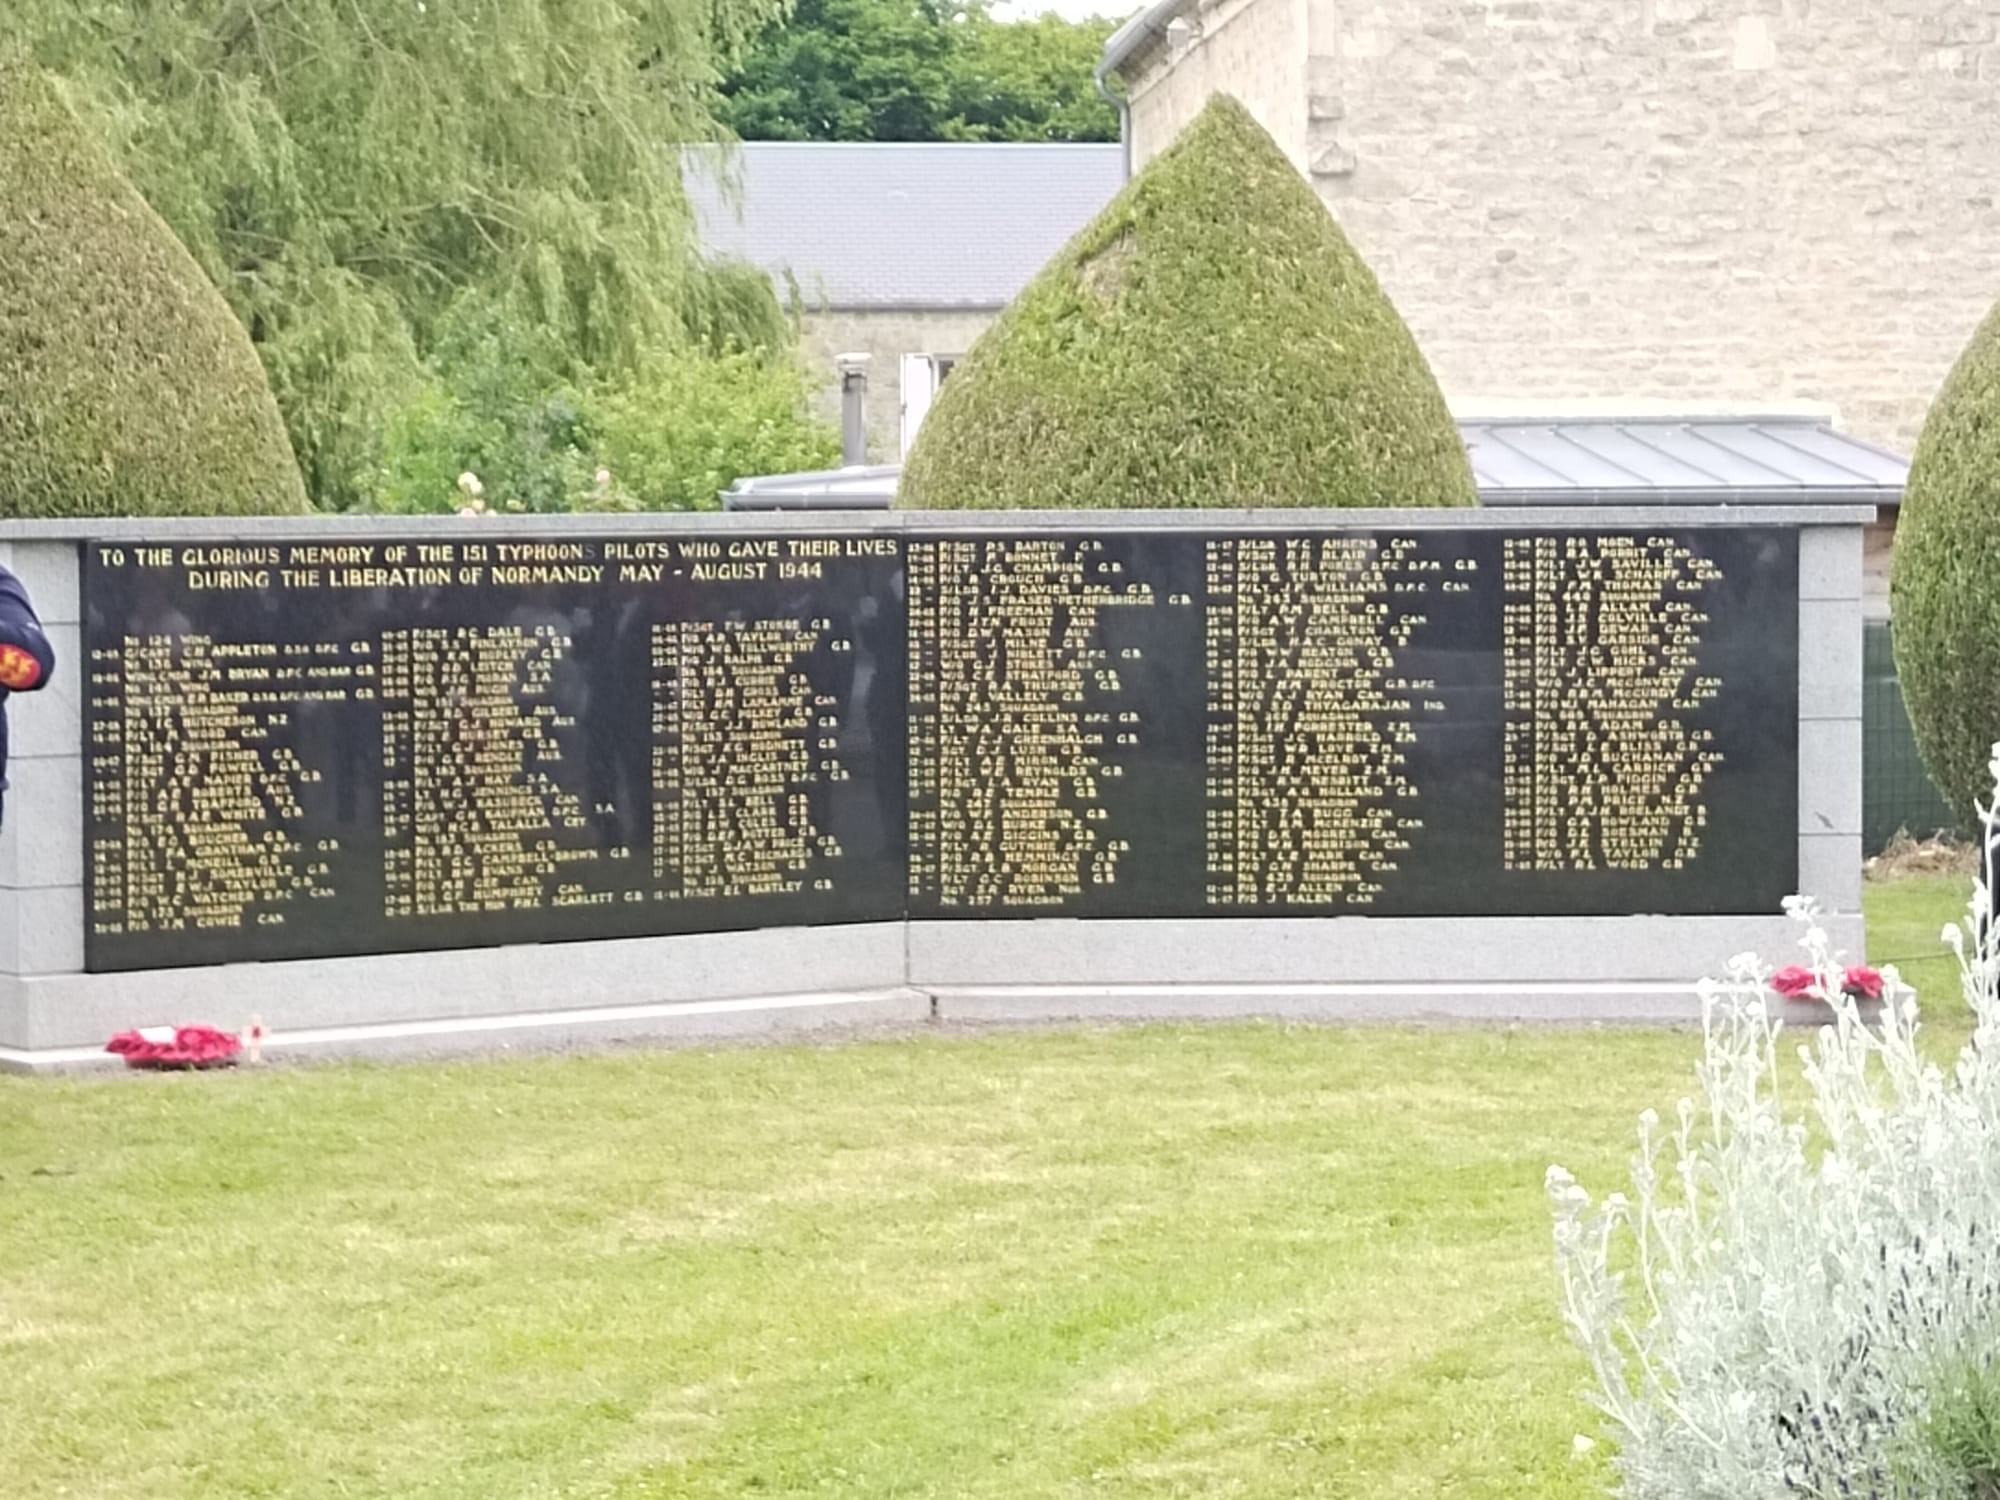 Listes des 151 pilotes de typhoons qui ont donne leur vie de mai a aout 1944 pour la liberation de la normandie